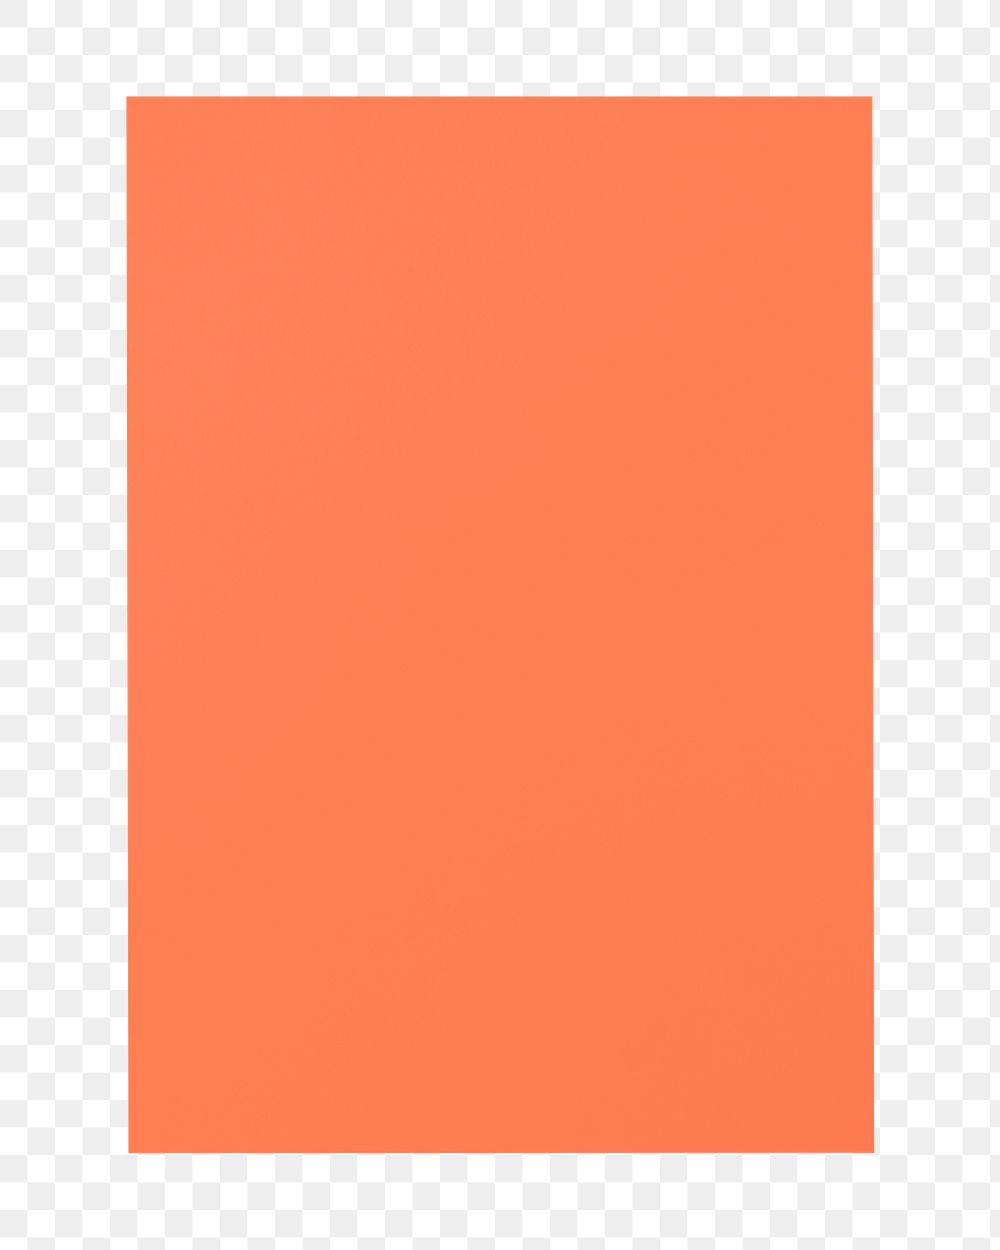 Orange poster png sticker, transparent background